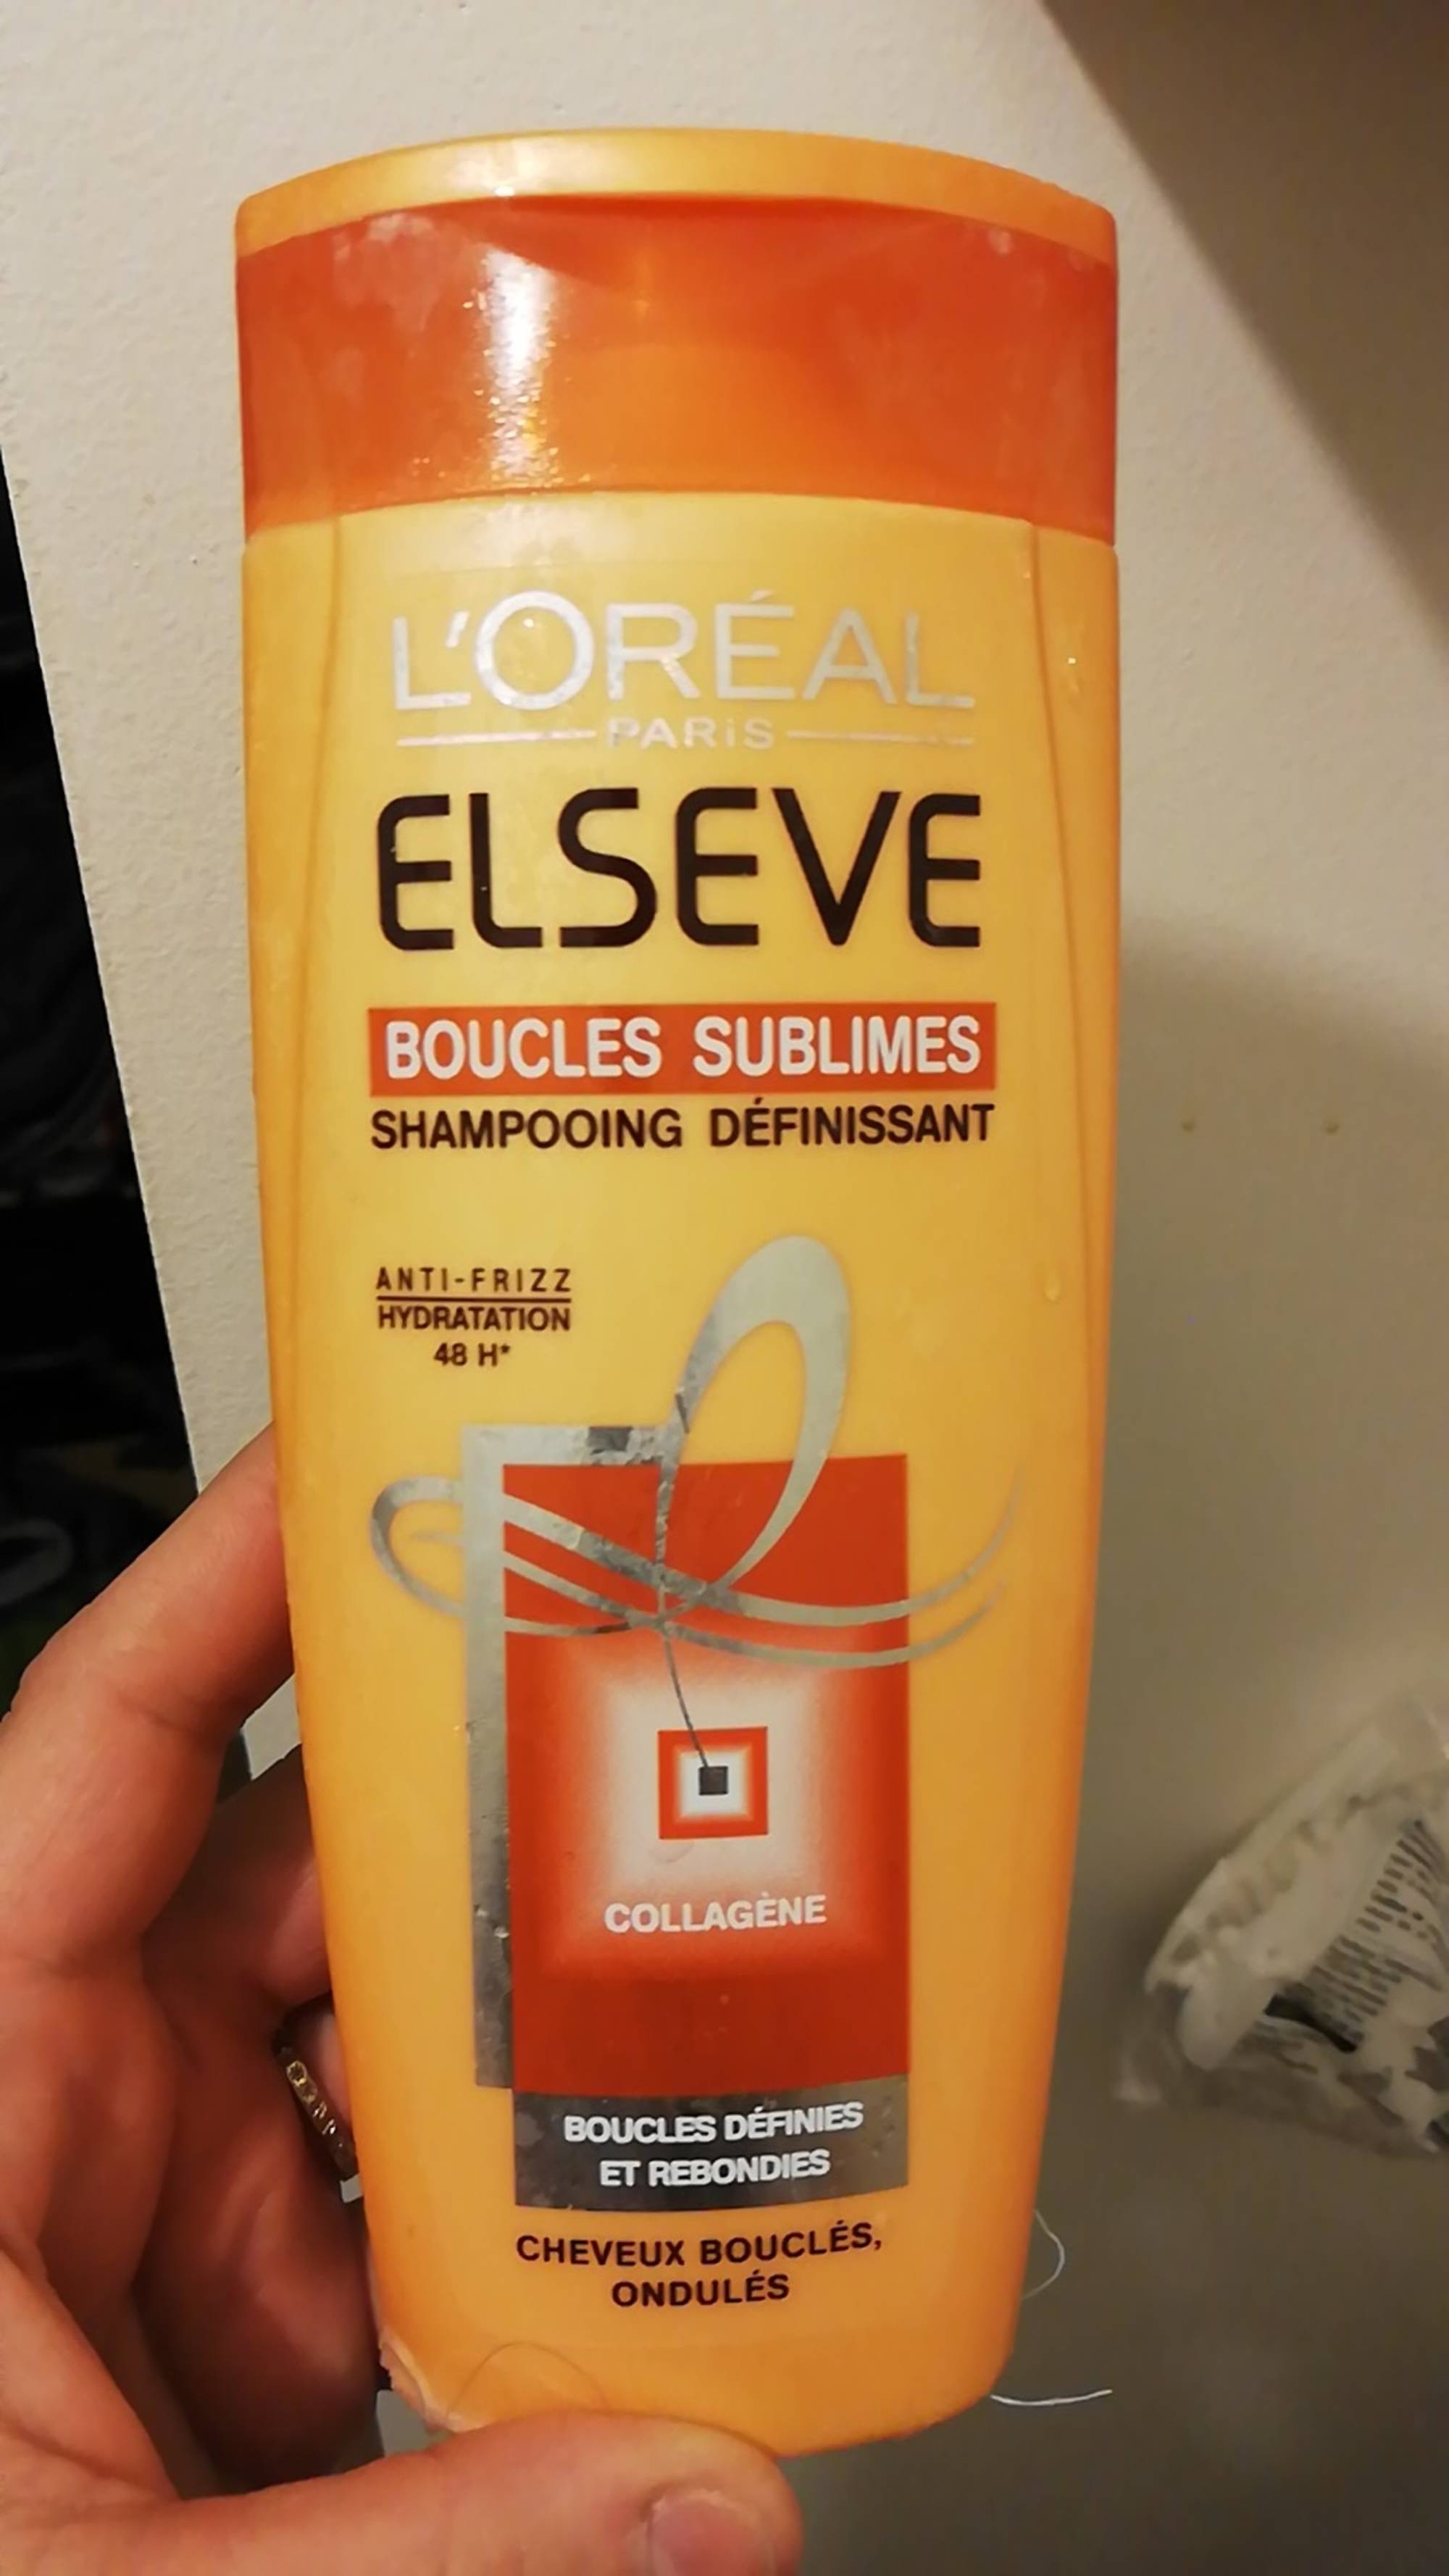 L'ORÉAL PARIS - Elseve boucles sublimes - Shampooing définissant